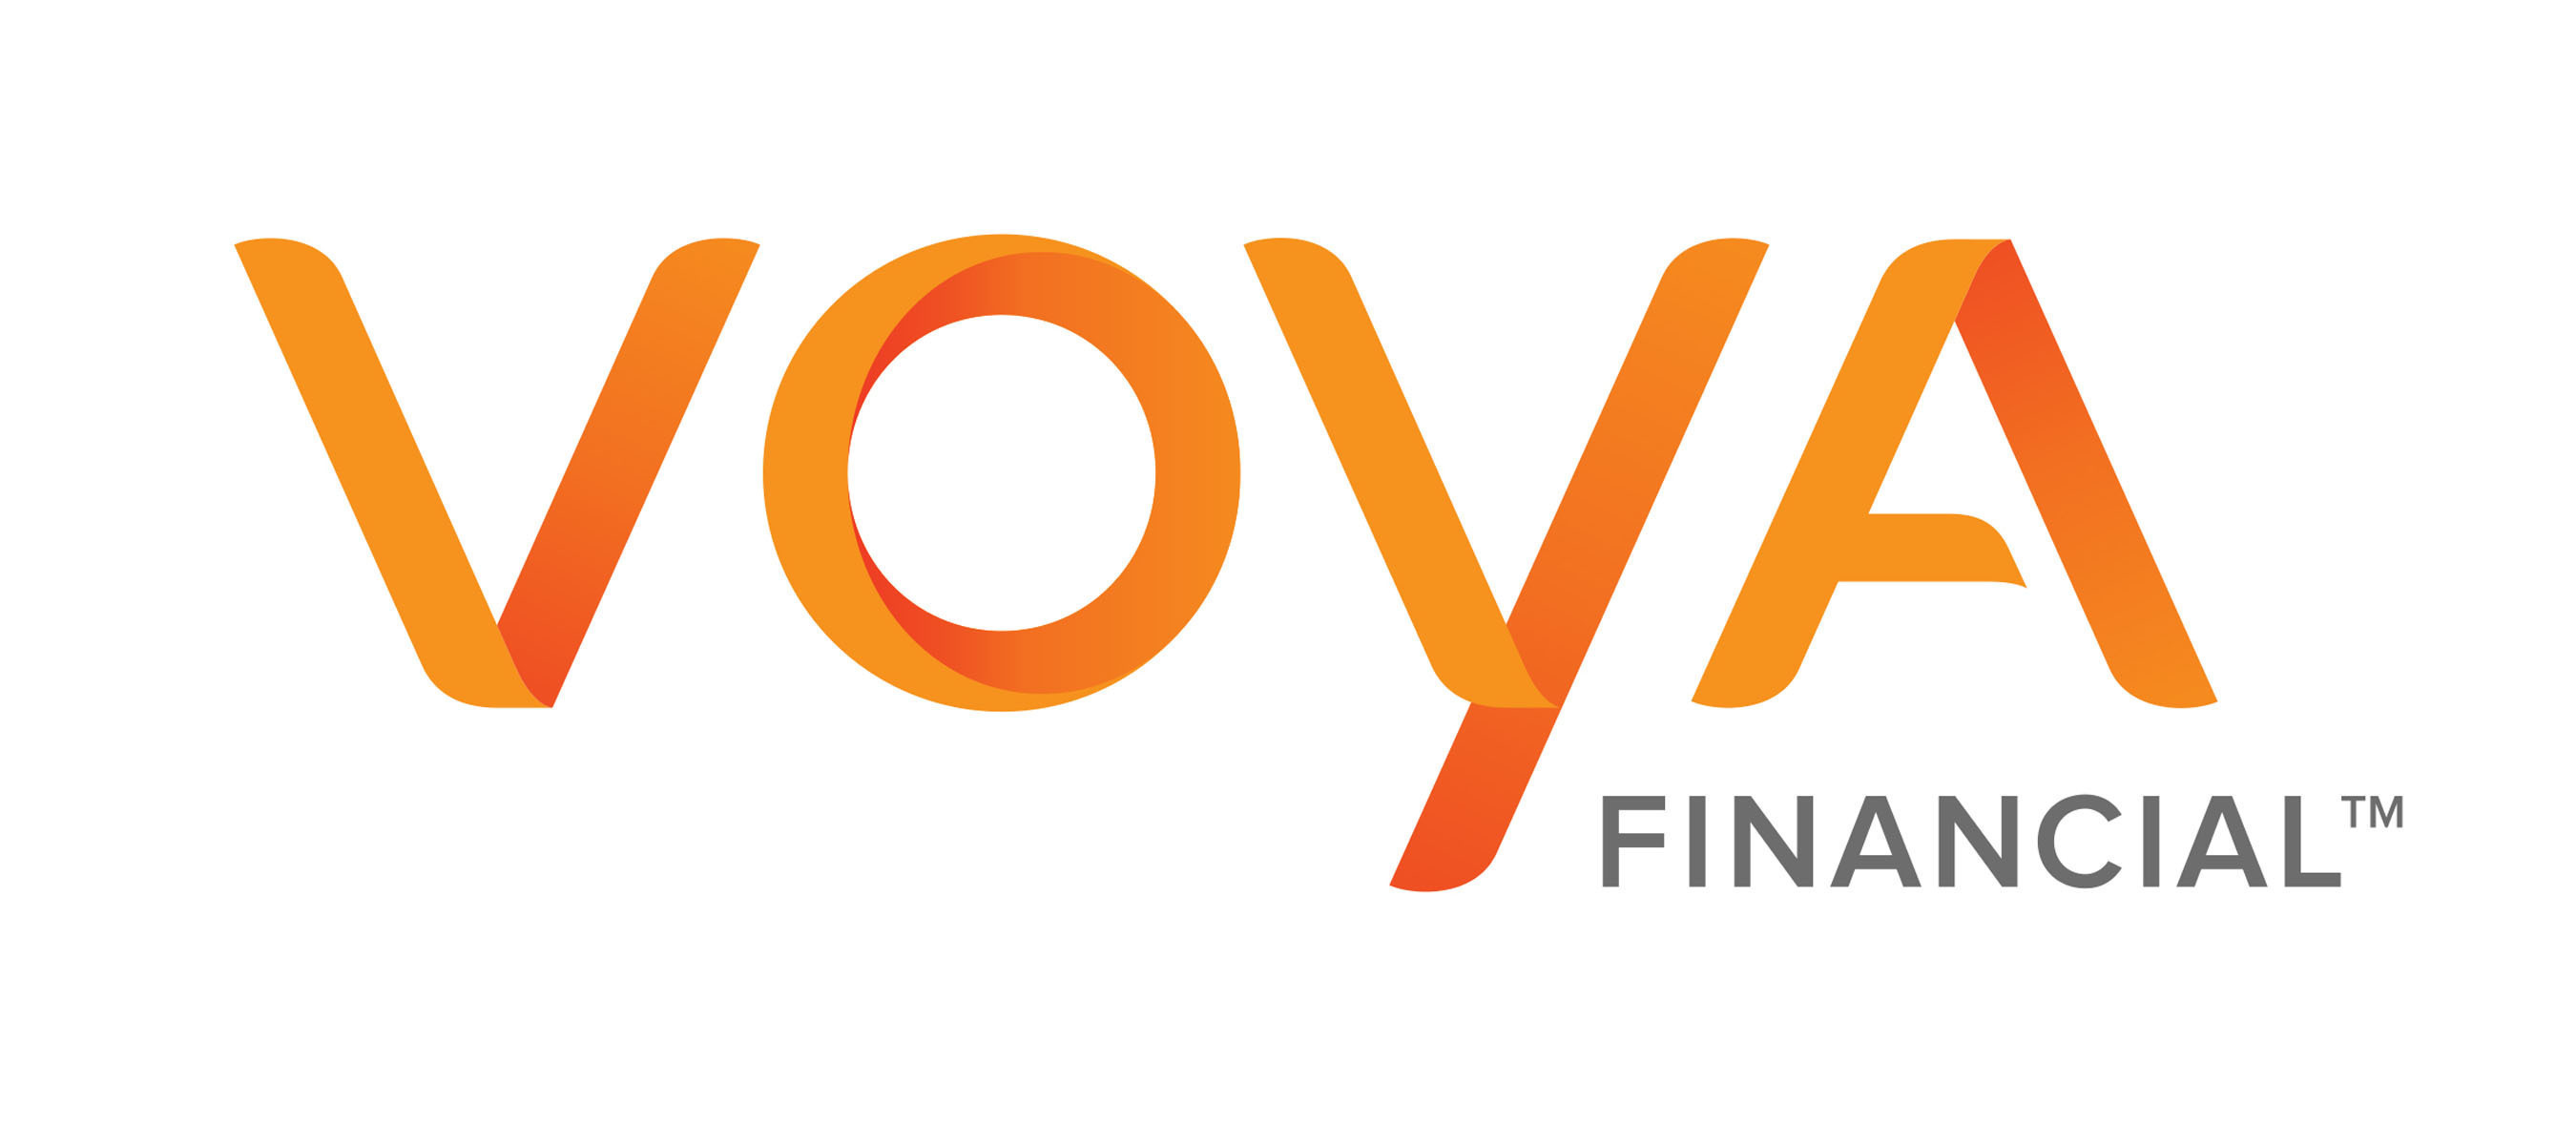 Voya Financial logo.